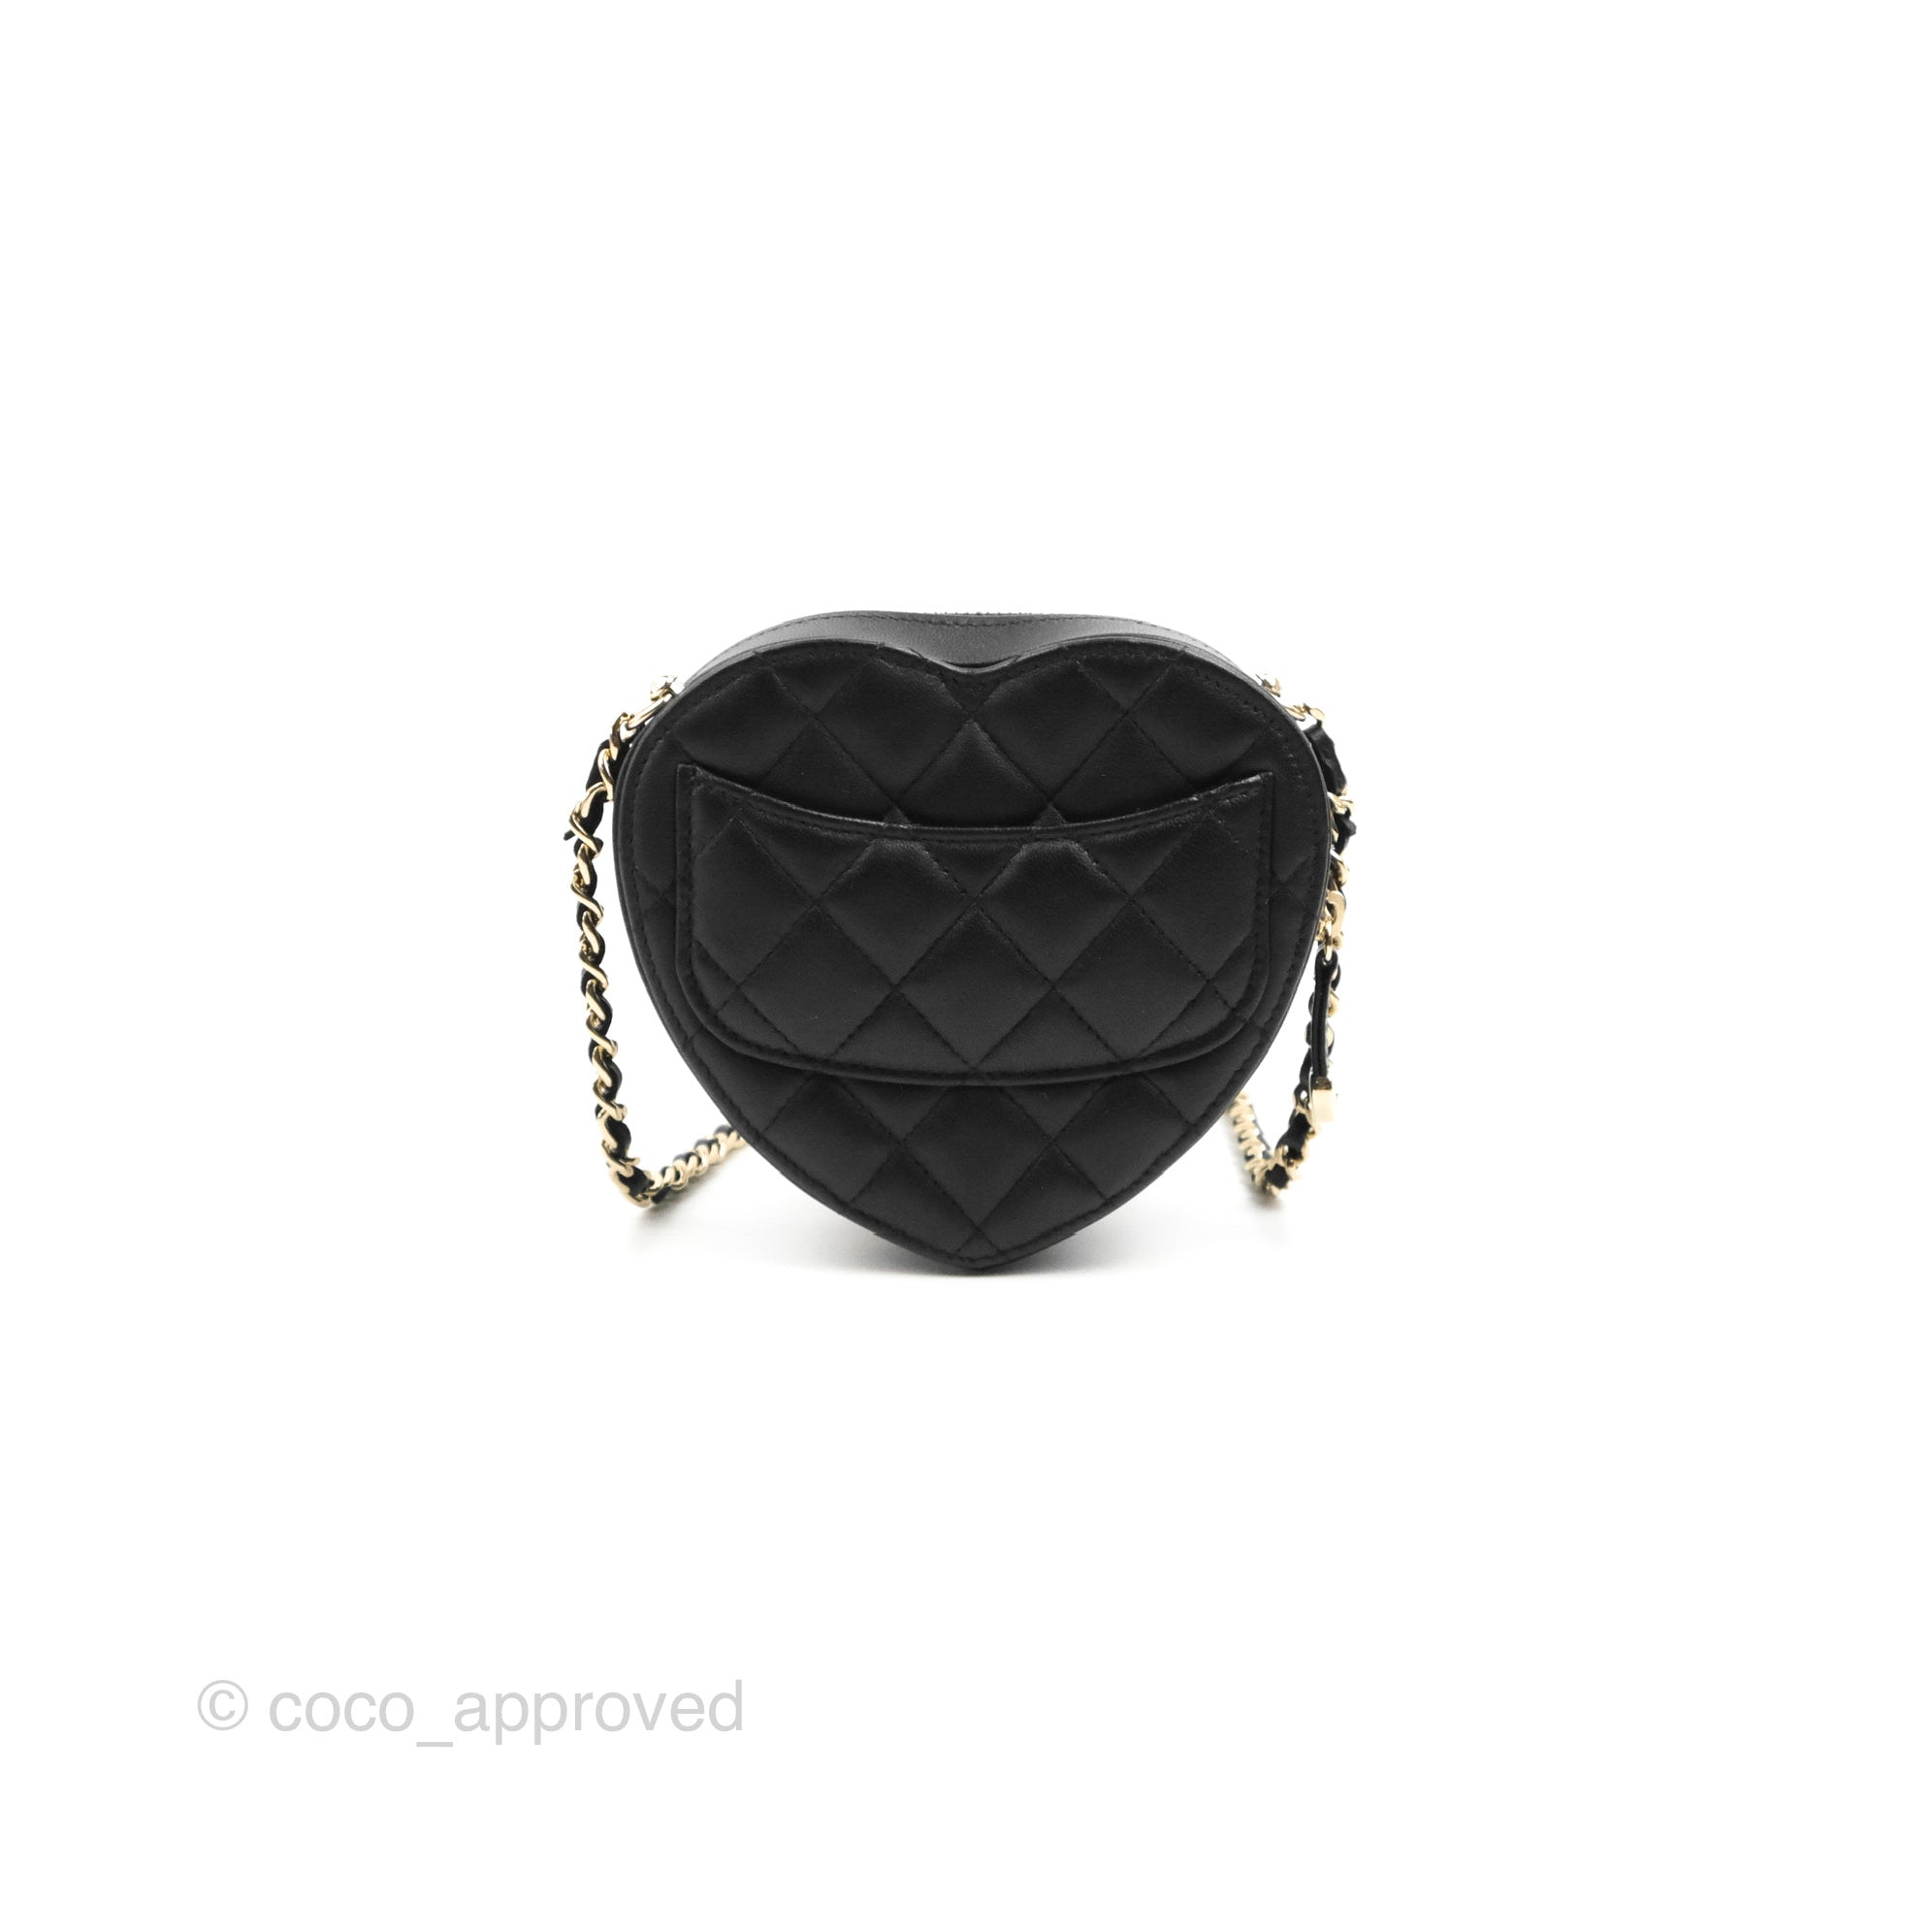 Chanel small boy bag caviar grey LGHW (microchip)